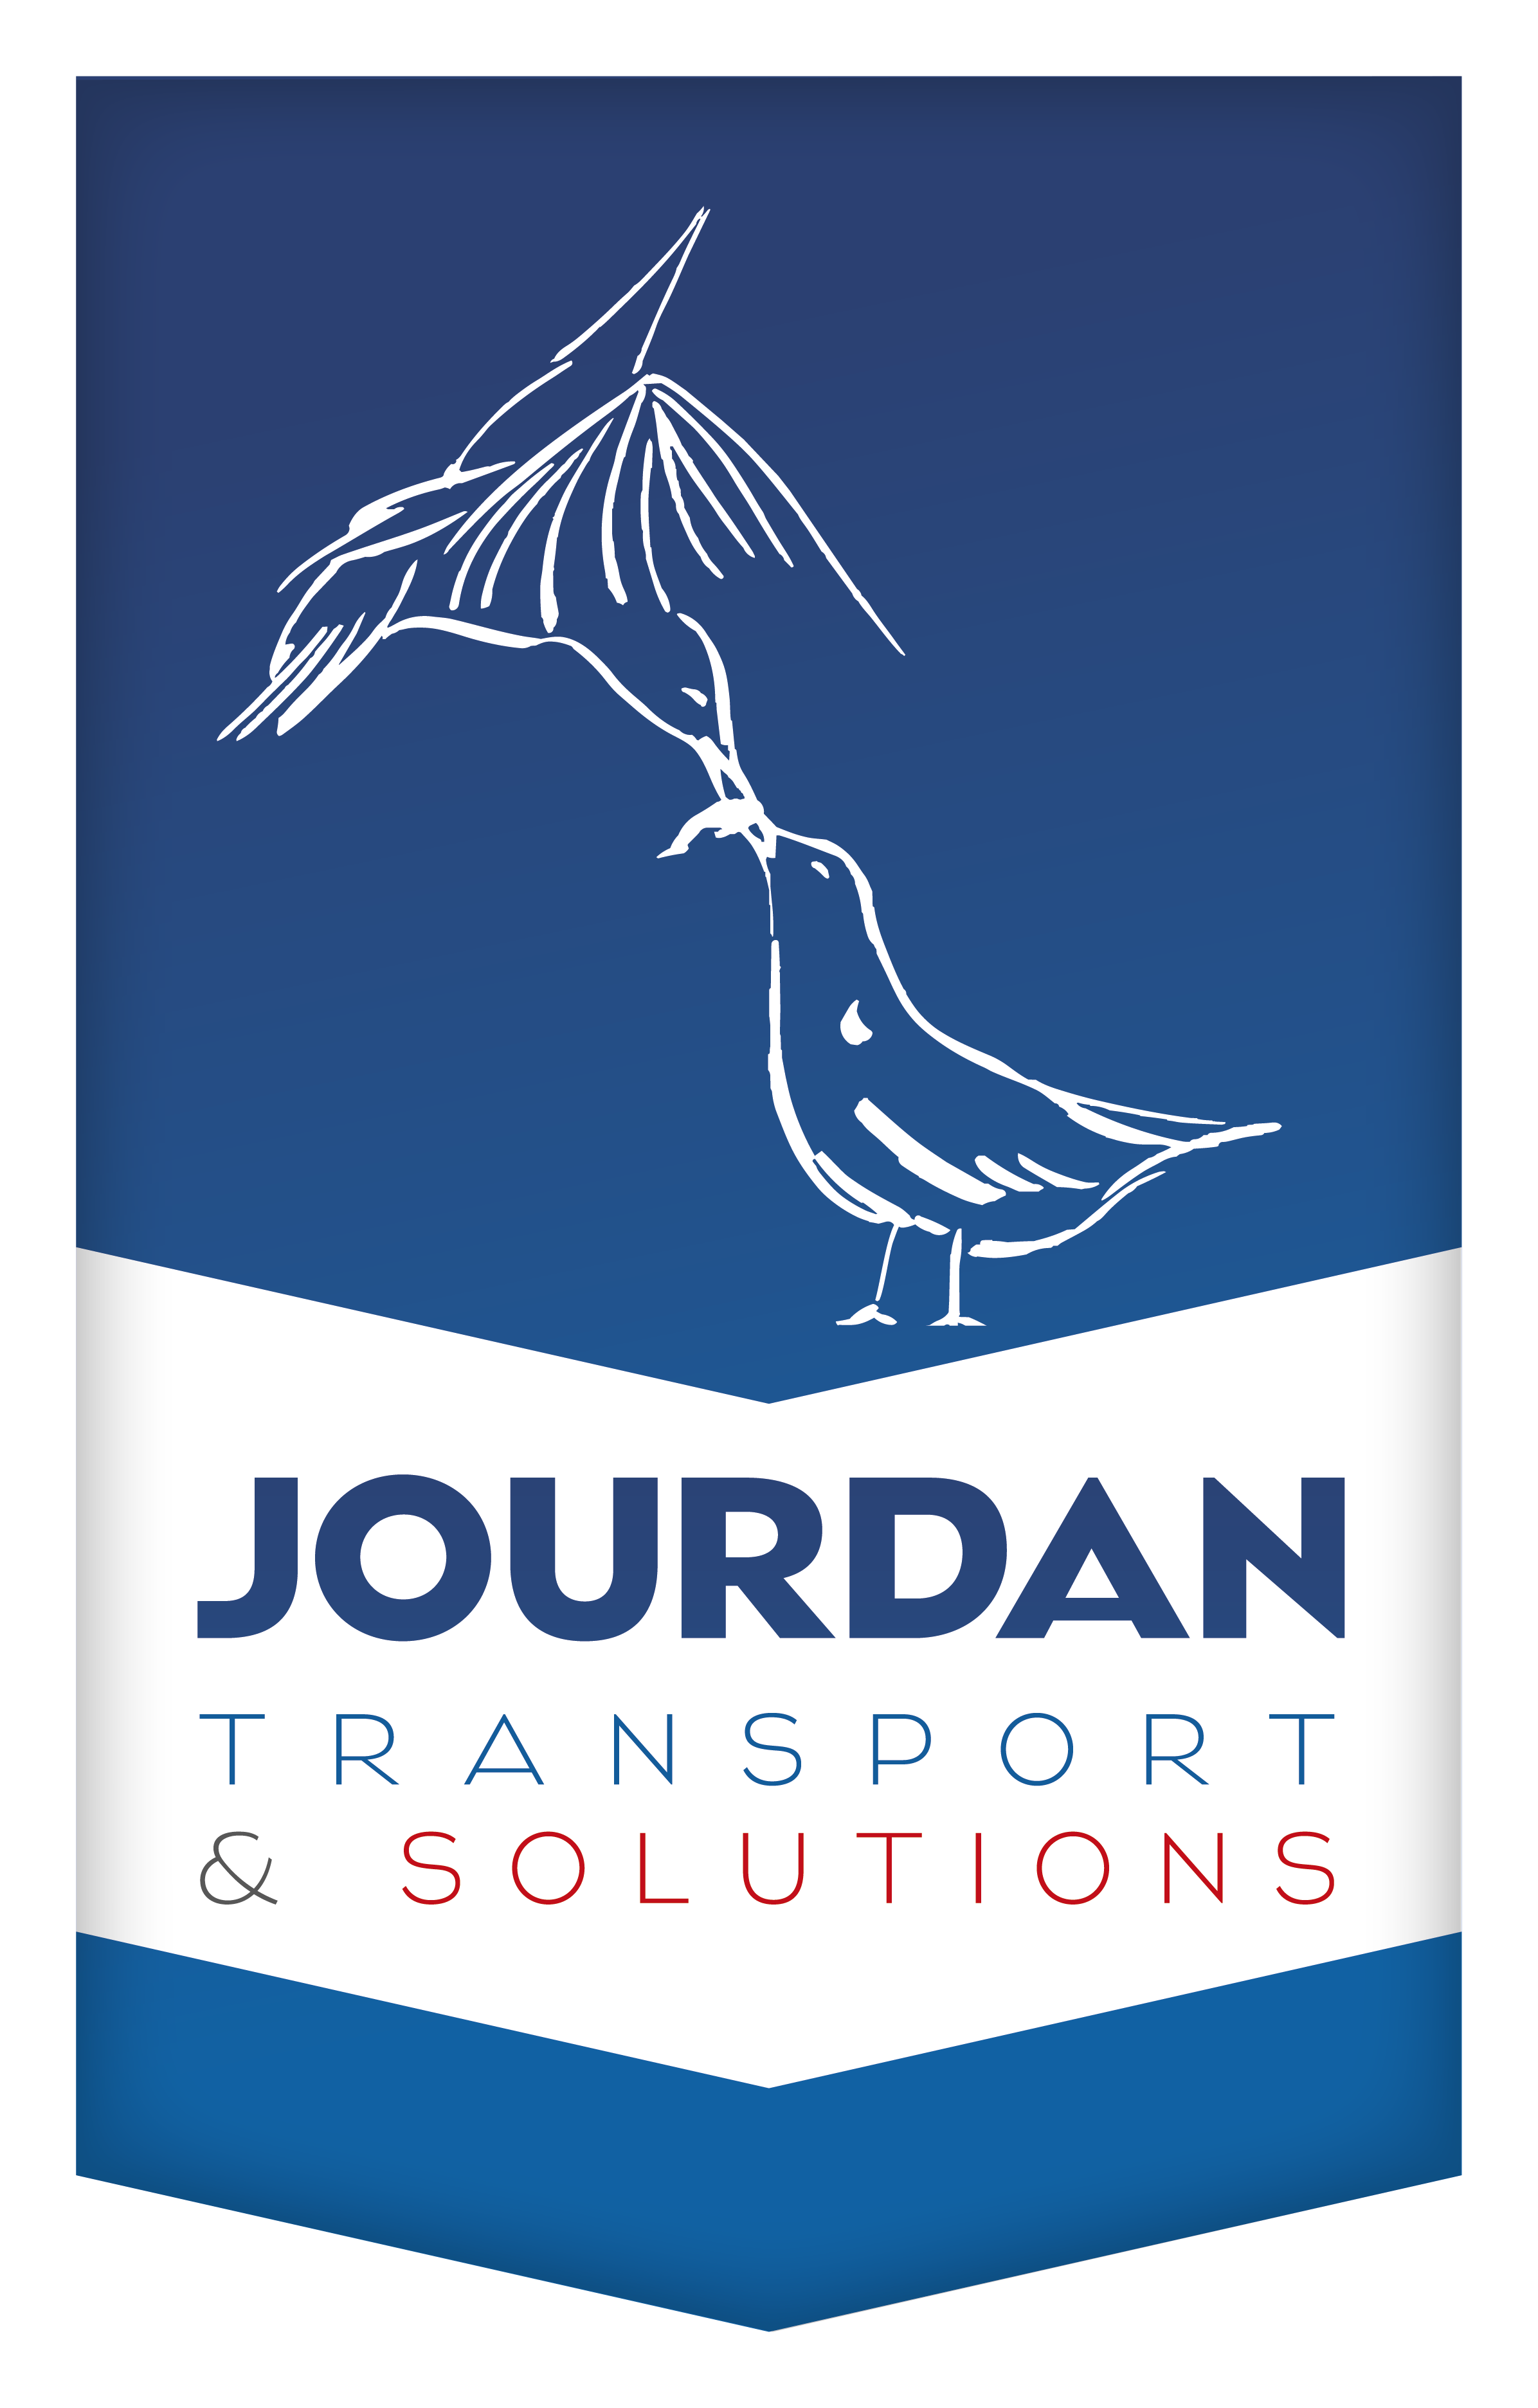 JOURDAN TRANSPORT & SOLUTIONS